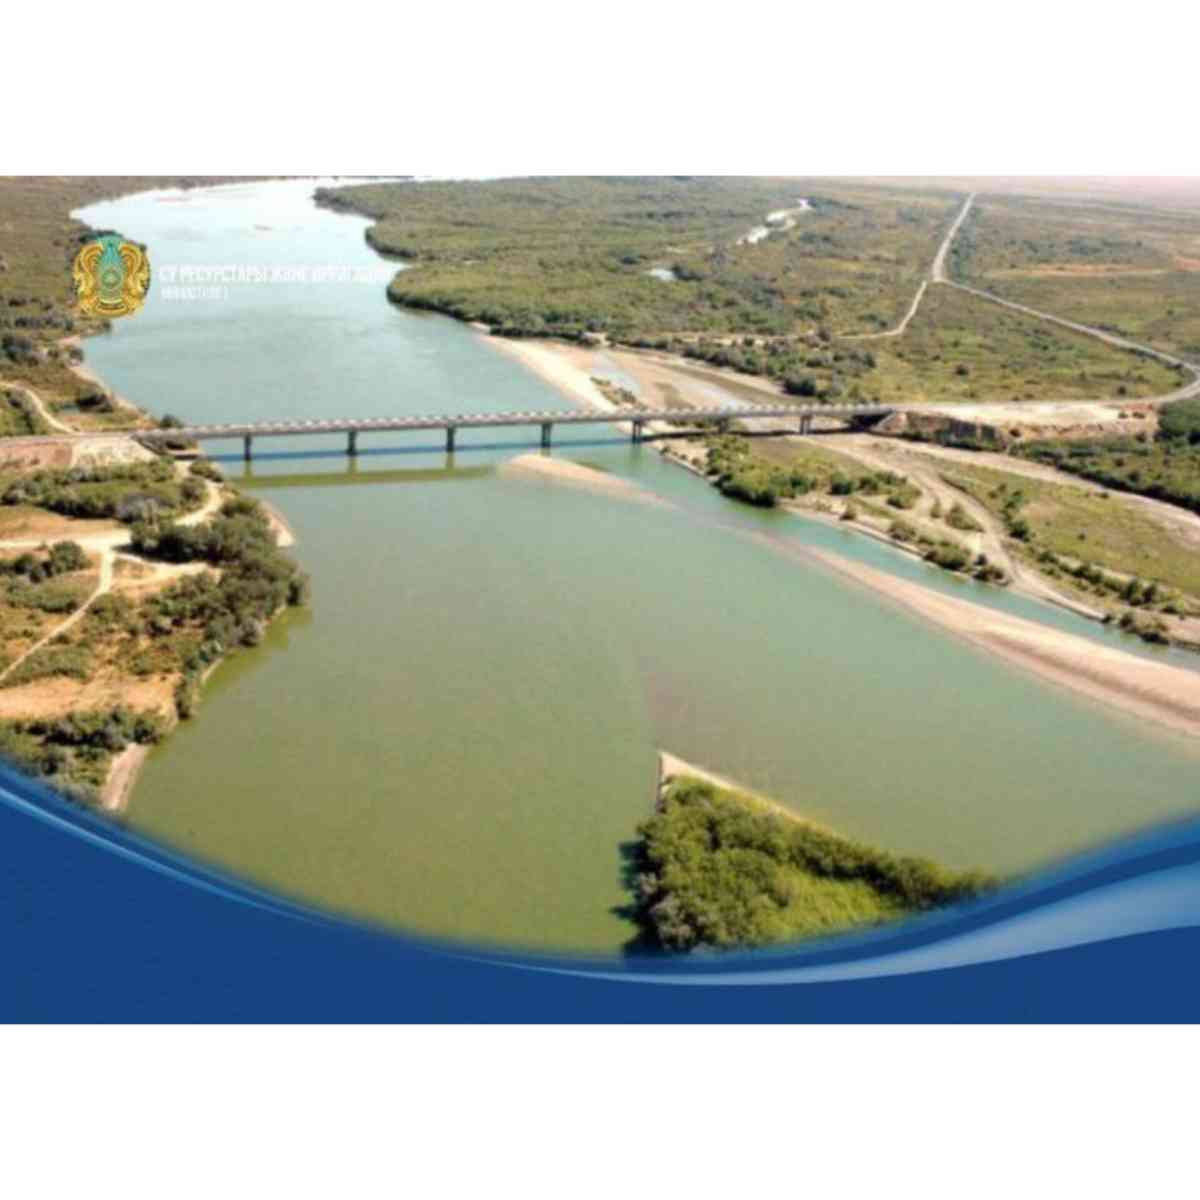 Казахстан намерен установить счётчики воды с соседними странами, уже есть договоренность с Узбекистаном